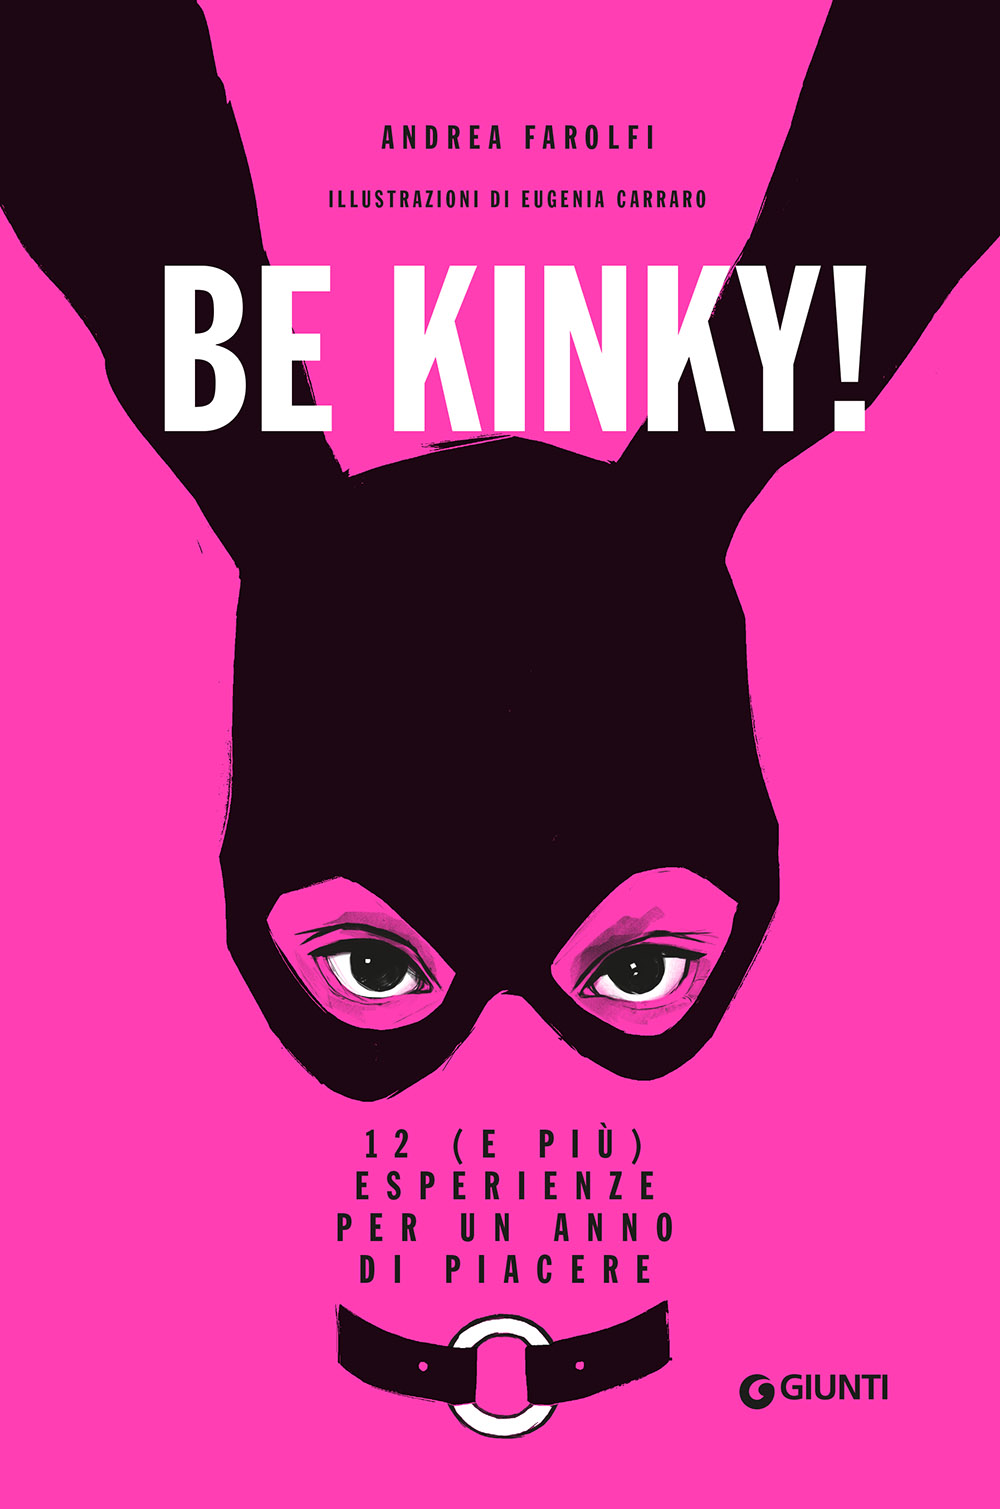 Be kinky!